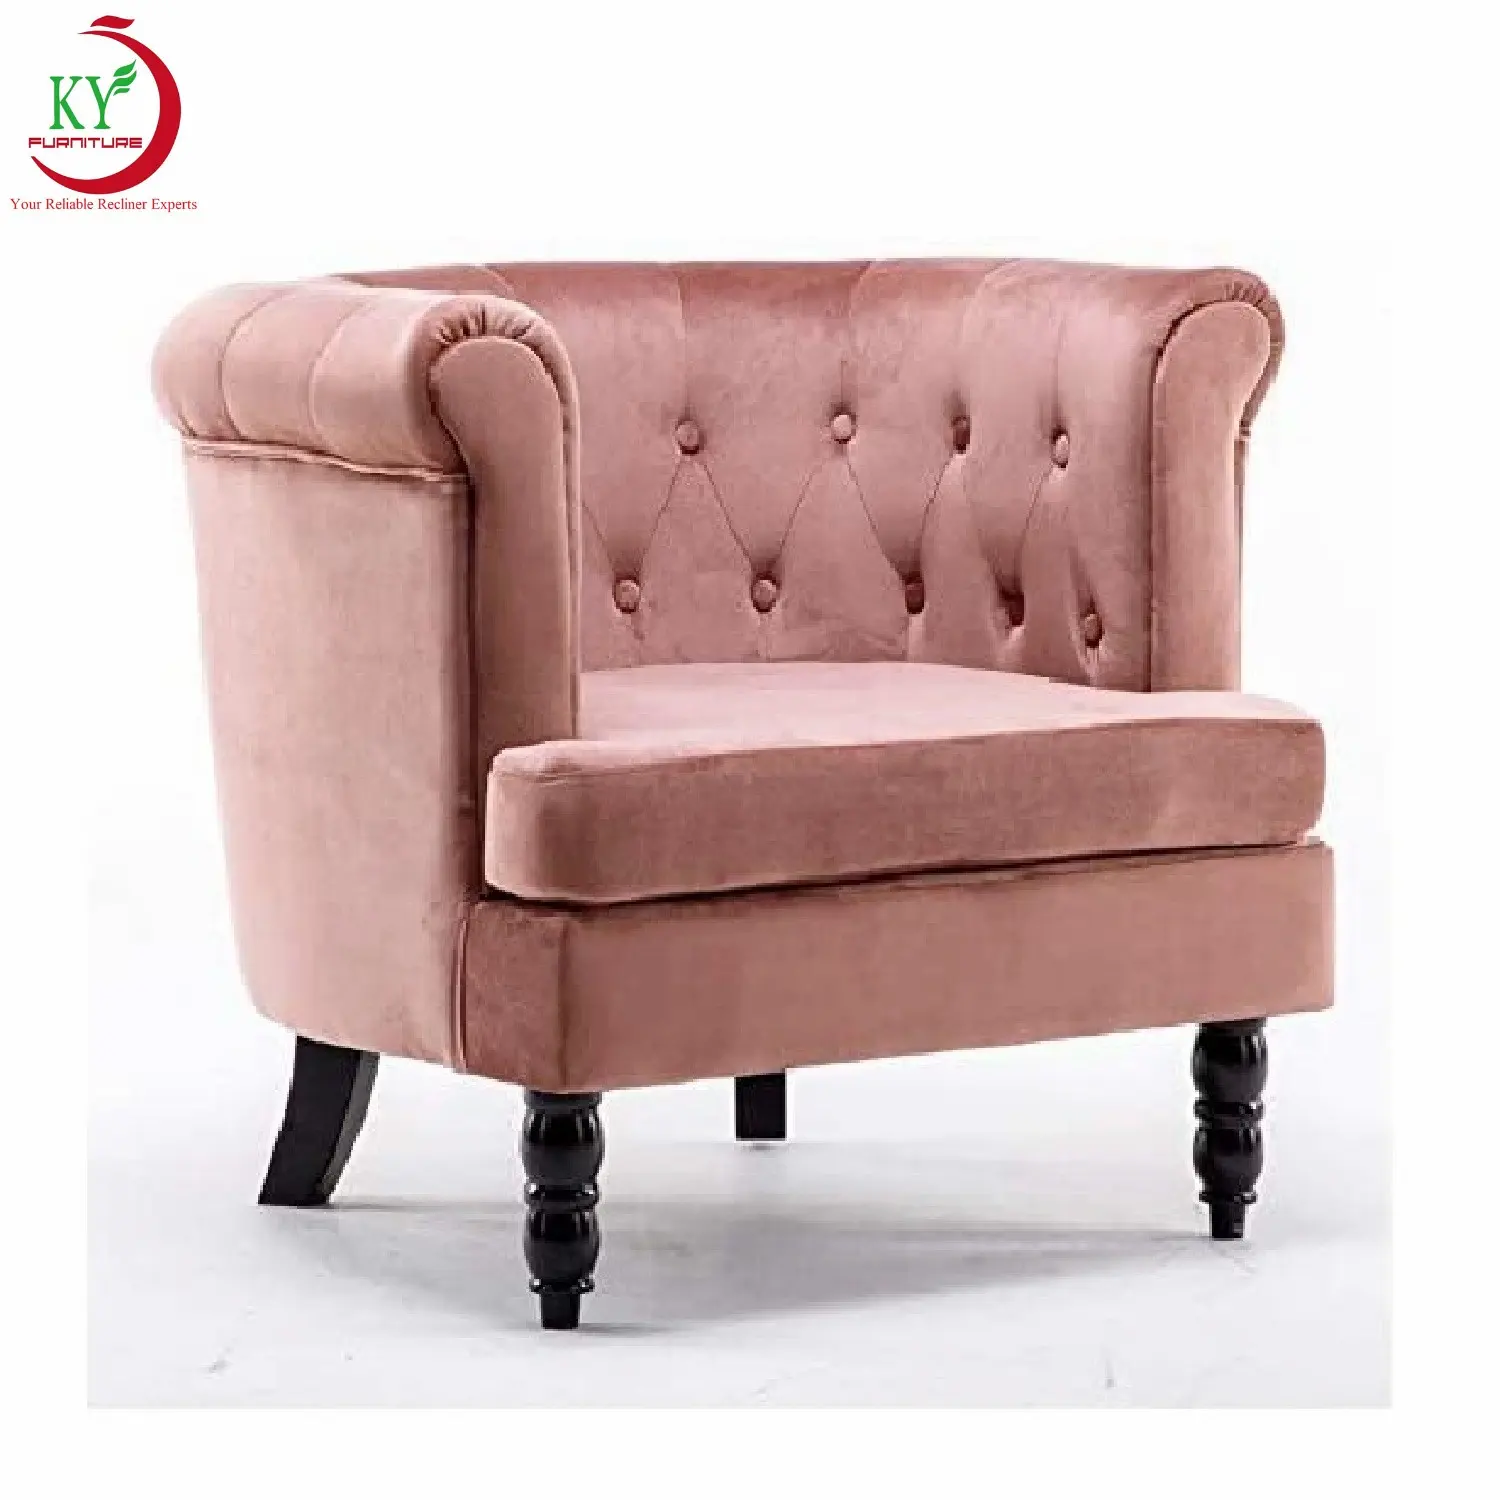 Geeksofa-silla clásica para sala de estar, sillón informal con patas de madera maciza